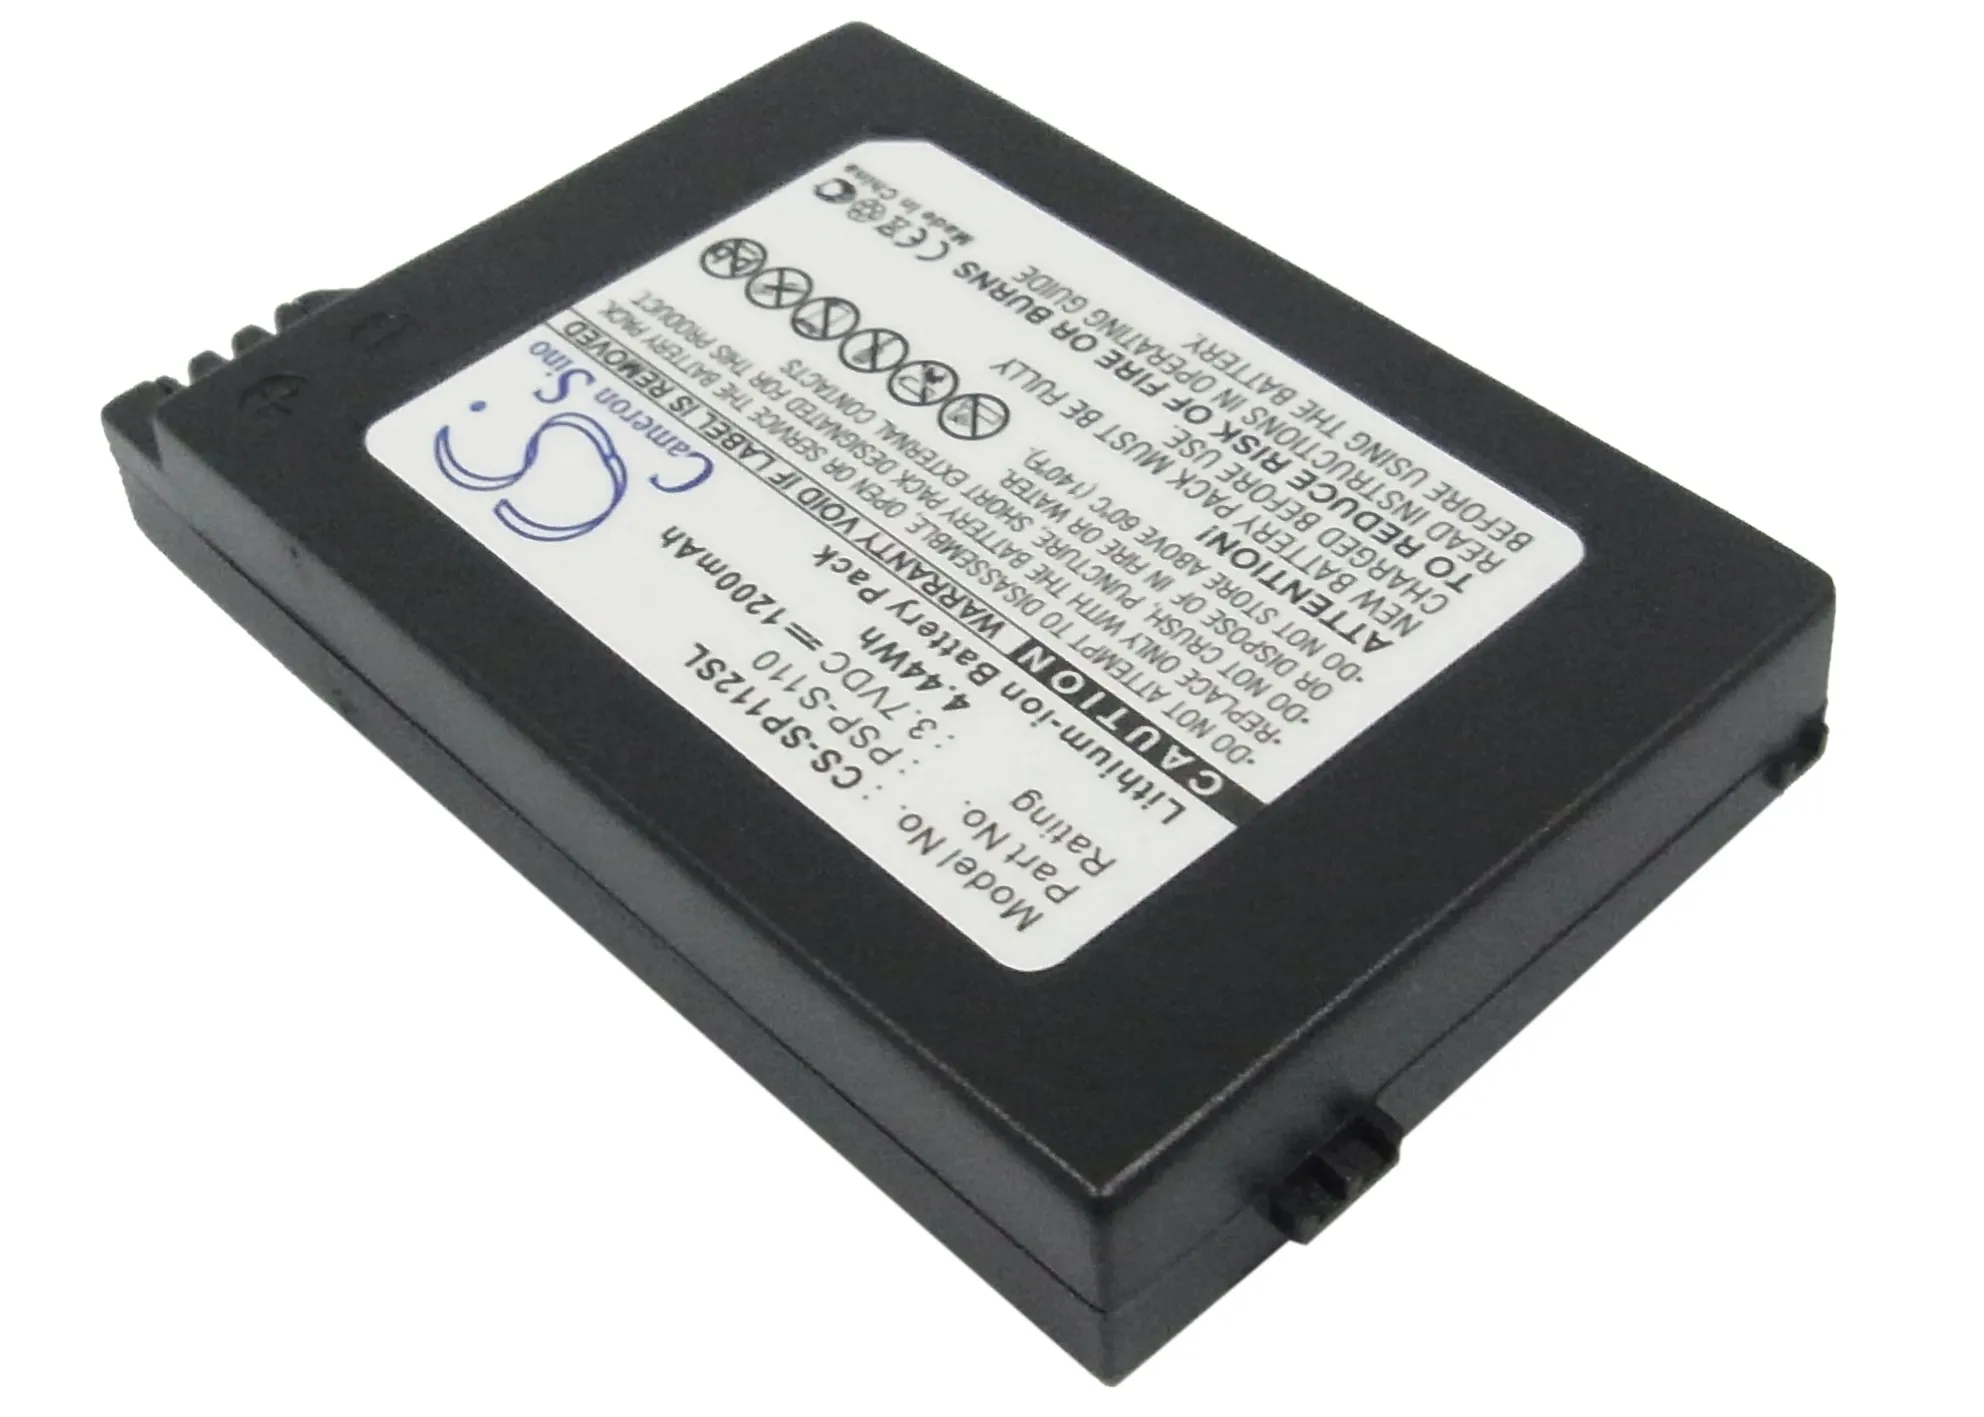 https://ae01.alicdn.com/kf/S5487d1d7e0374fdc85a61db86a7f2bb7b/Speaker-Battery-For-Sony-PSP-S110-PSP-2th-Silm-Lite-PSP-2000-PSP-3000-PSP-3004.jpg